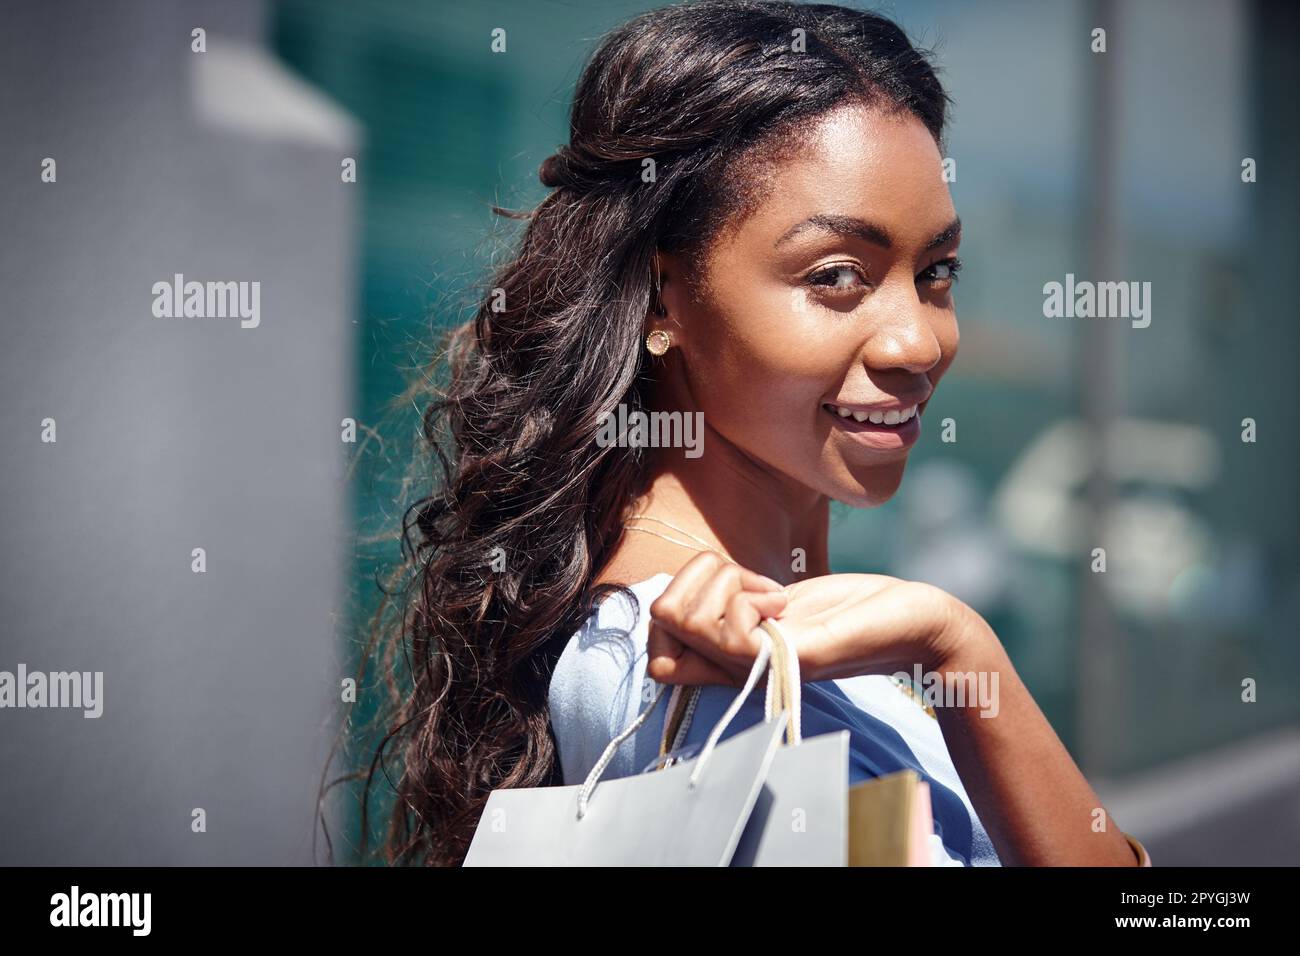 Tun Sie mehr von dem, was Sie glücklich macht. Porträt einer schönen Frau, die ihre Einkaufstüten in der Hand hält. Stockfoto